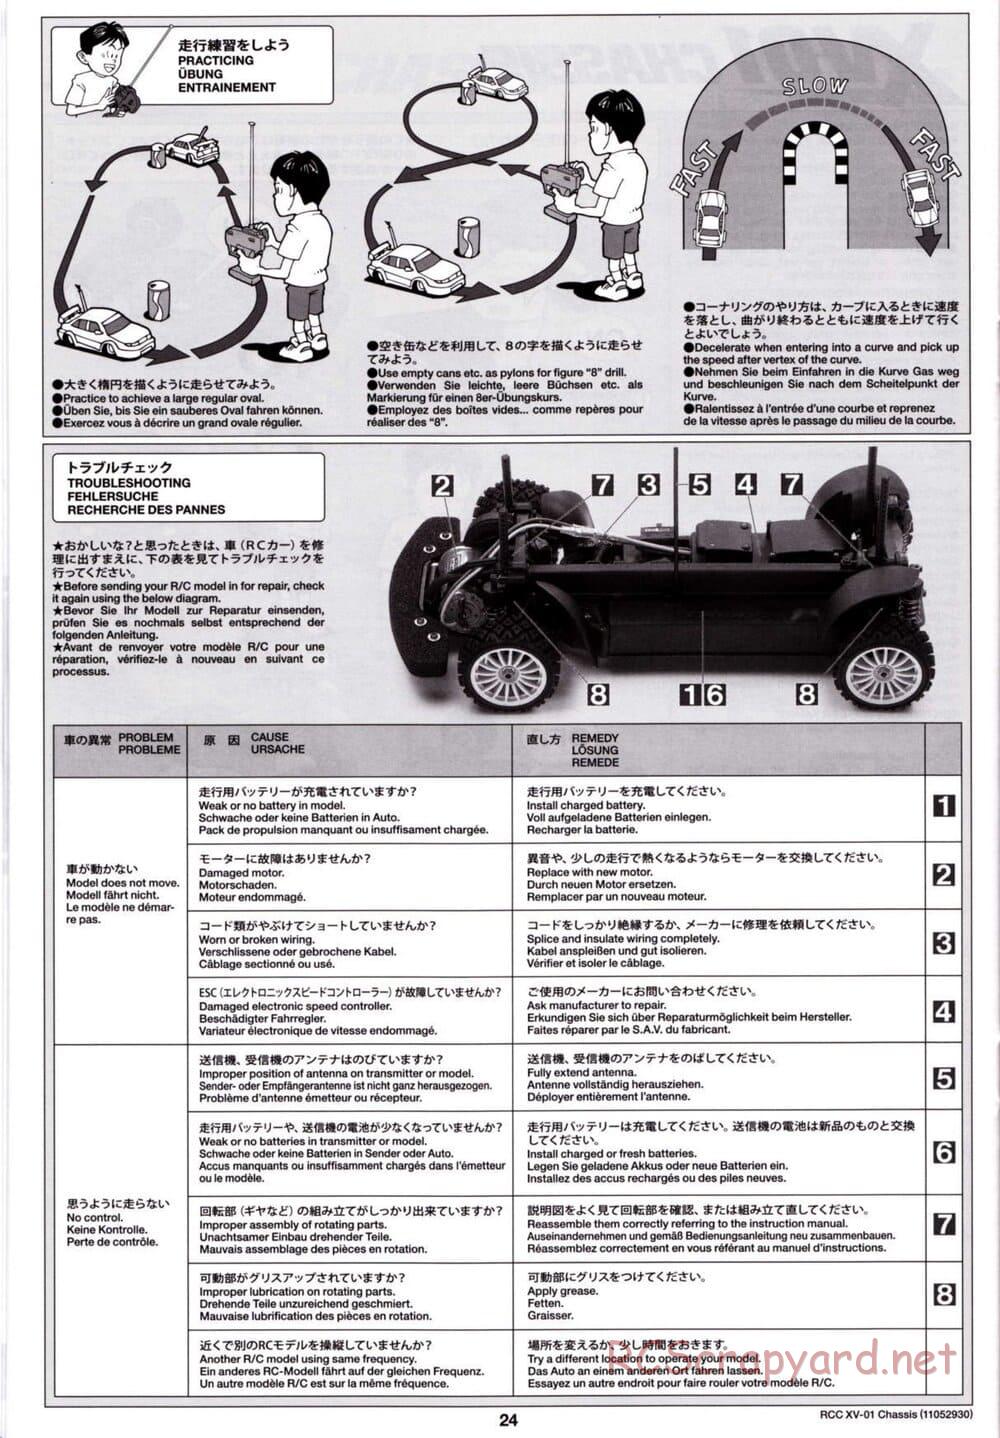 Tamiya - XV-01 Chassis - Manual - Page 25